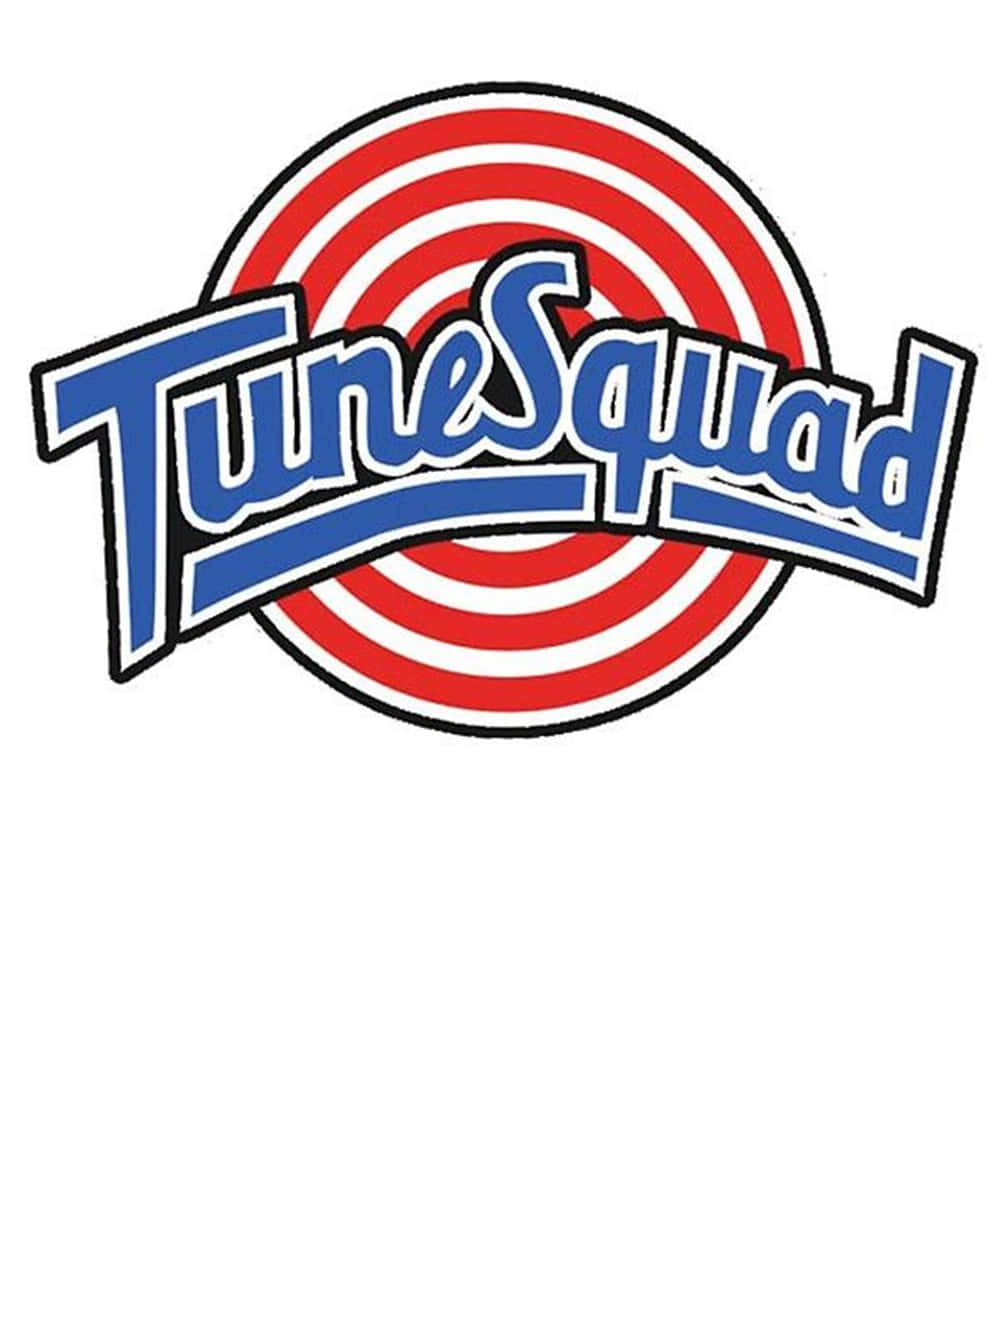 Tune Squad Vintage Logo Background